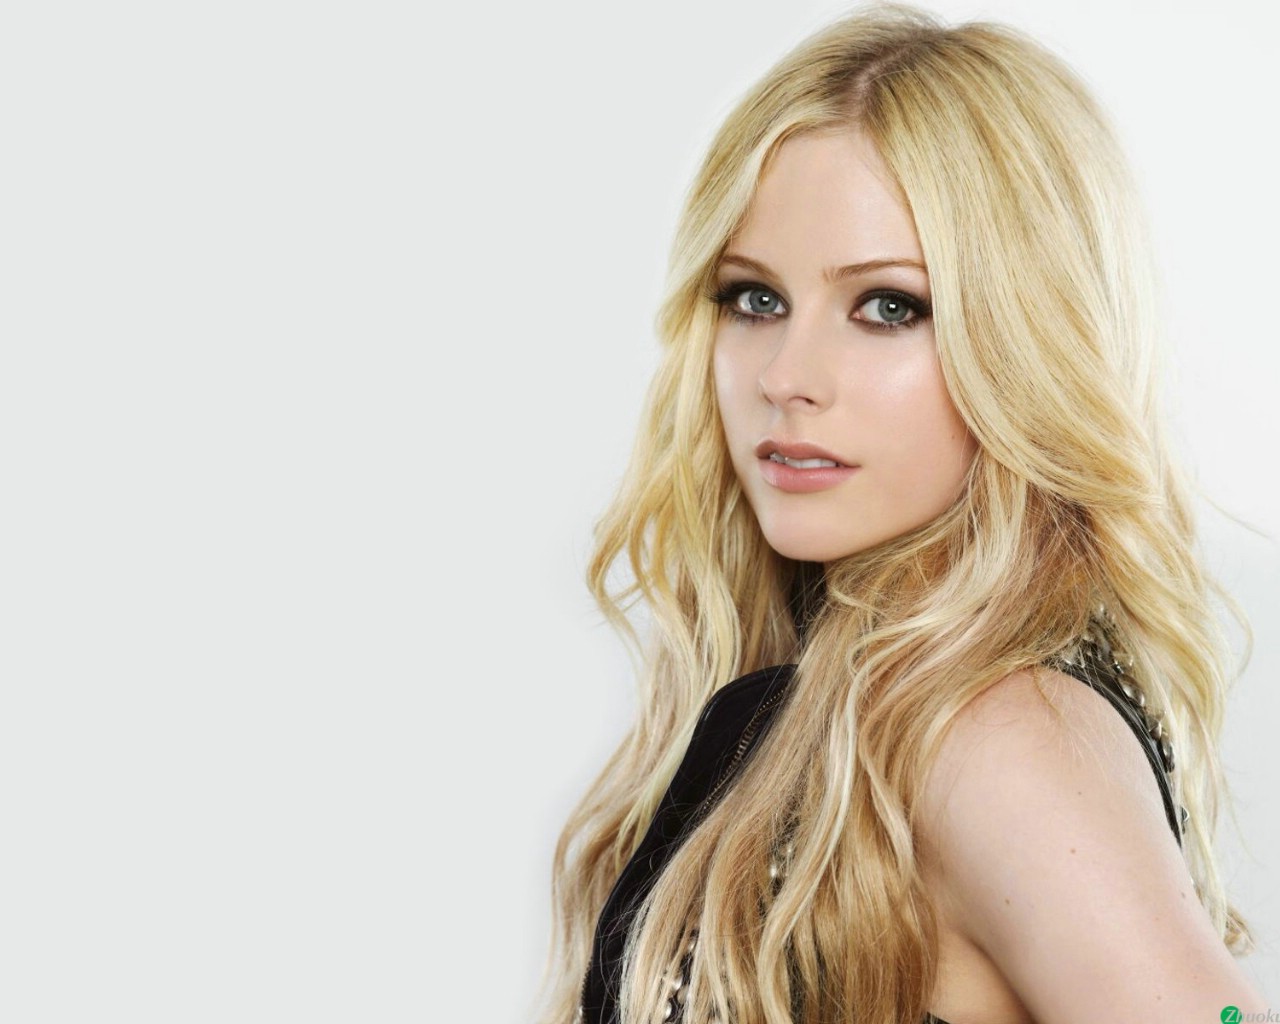 壁纸1280x1024艾薇儿 Avril Lavigne 壁纸1壁纸 艾薇儿 Avril Lavigne壁纸 艾薇儿 Avril Lavigne图片 艾薇儿 Avril Lavigne素材 明星壁纸 明星图库 明星图片素材桌面壁纸